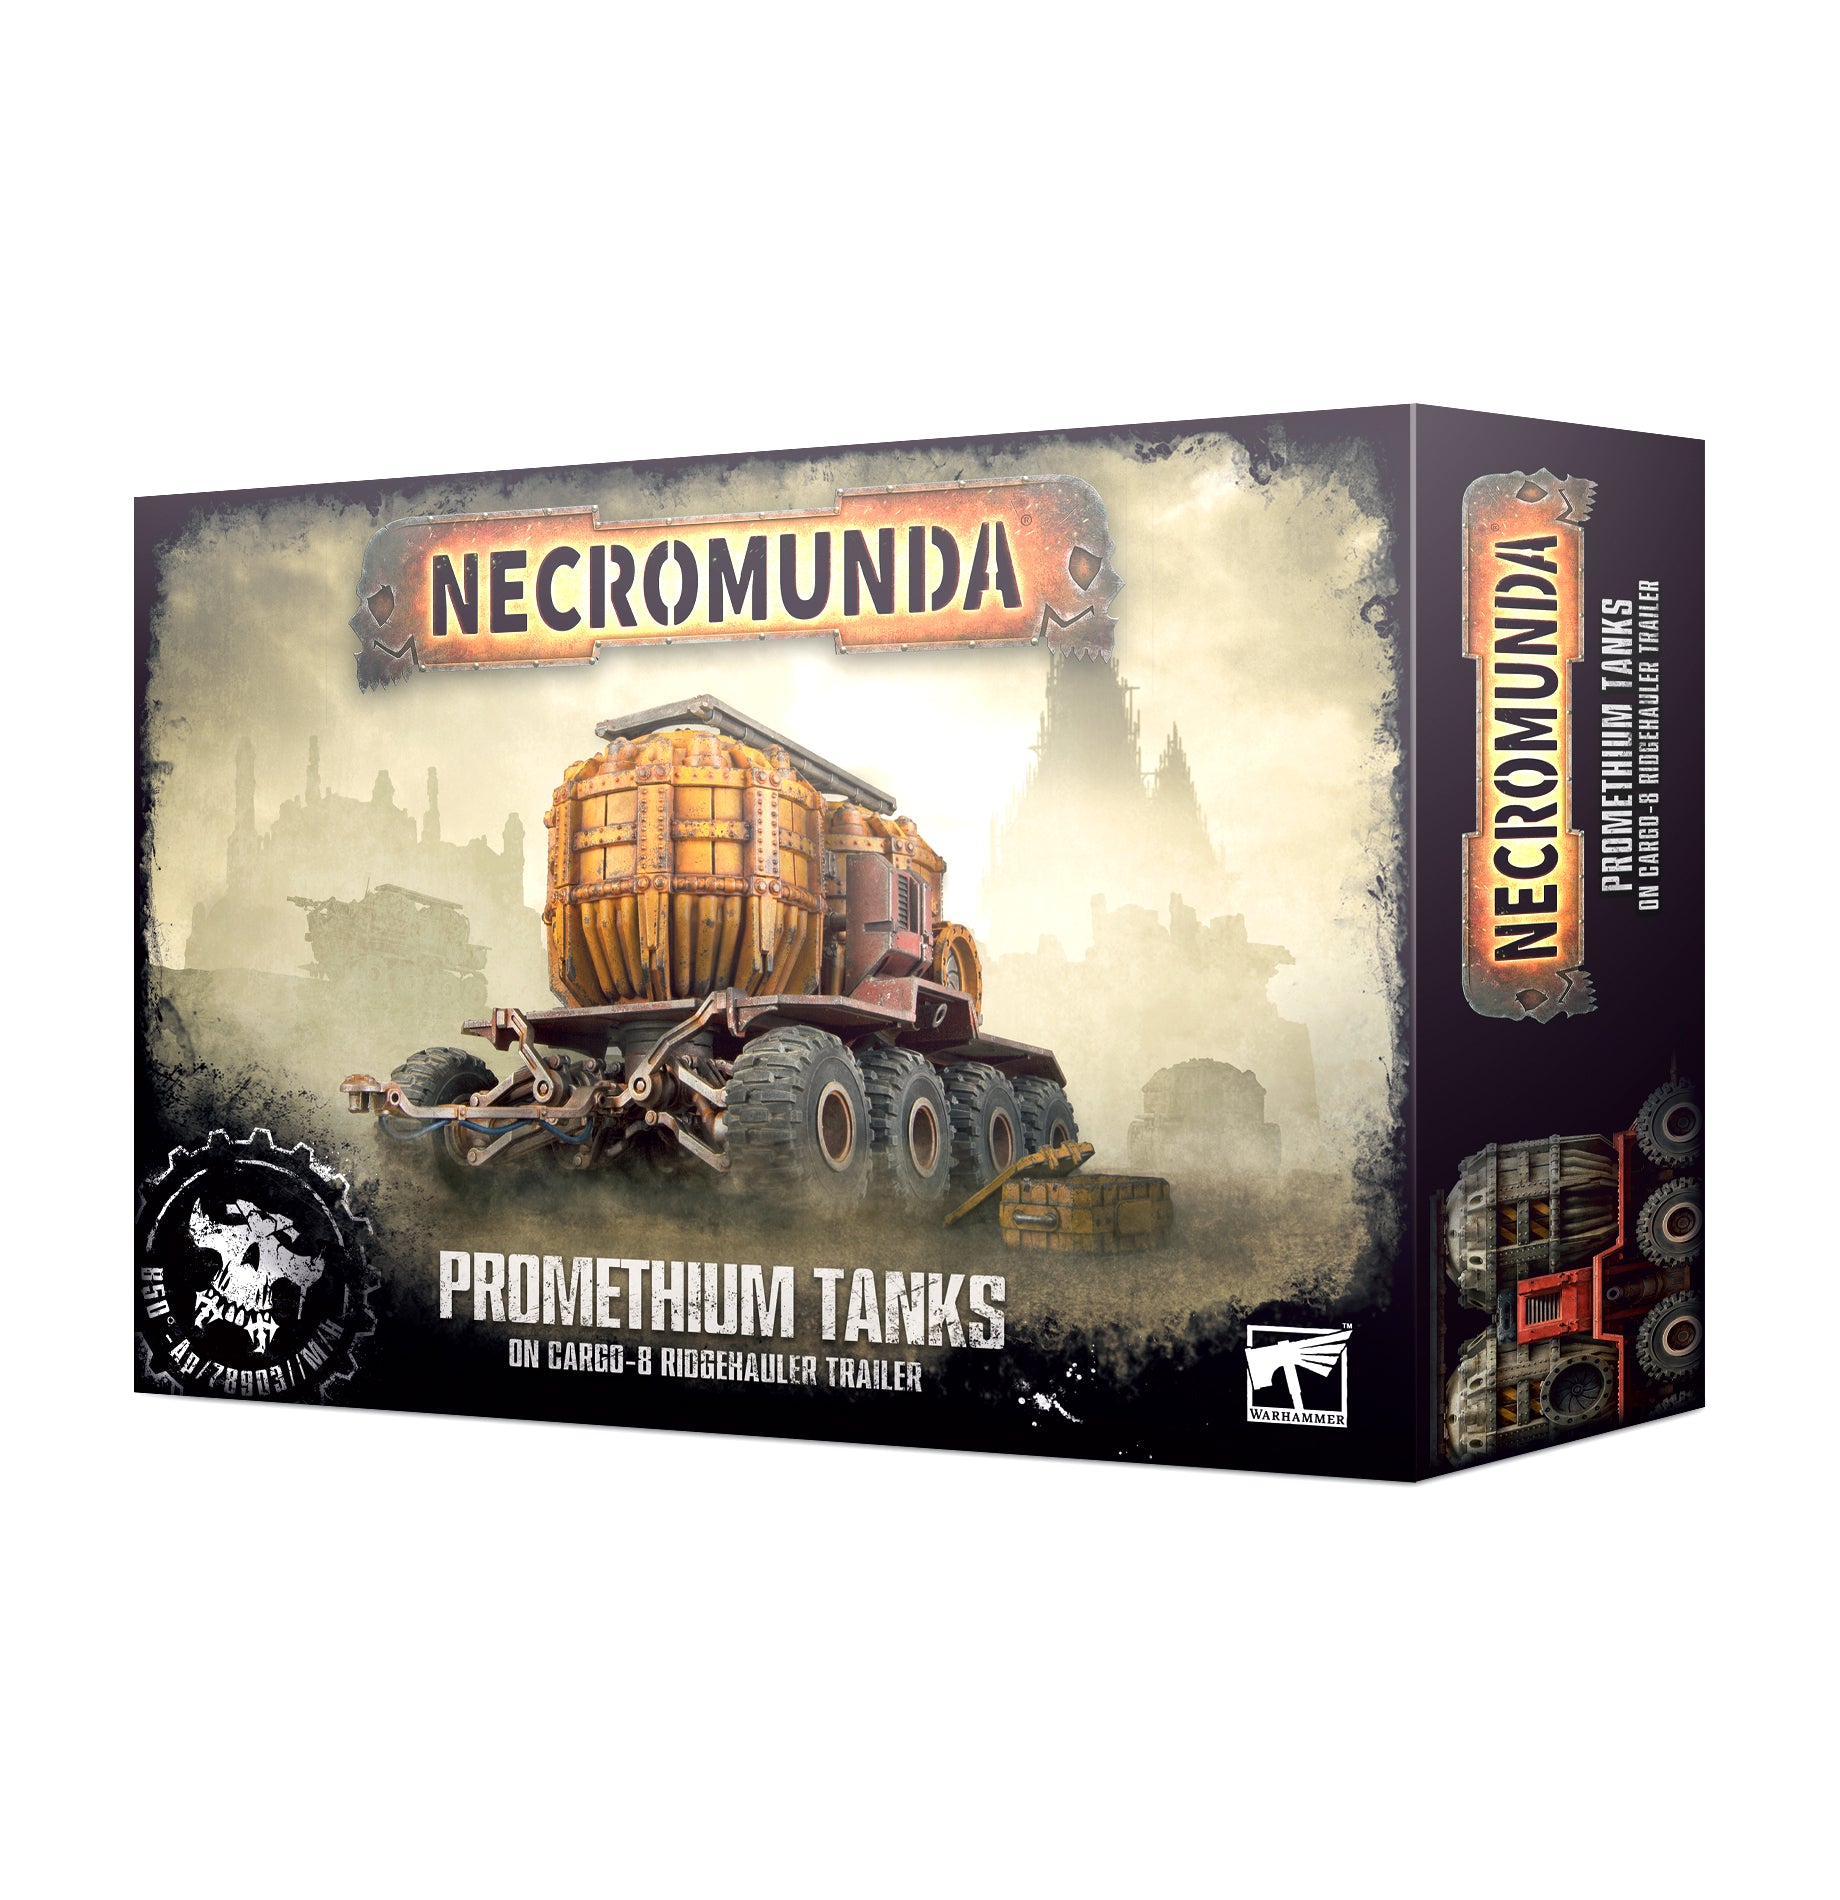 Necromunda: Promethium Tanks on Cargo-8 Trailer | Kessel Run Games Inc. 